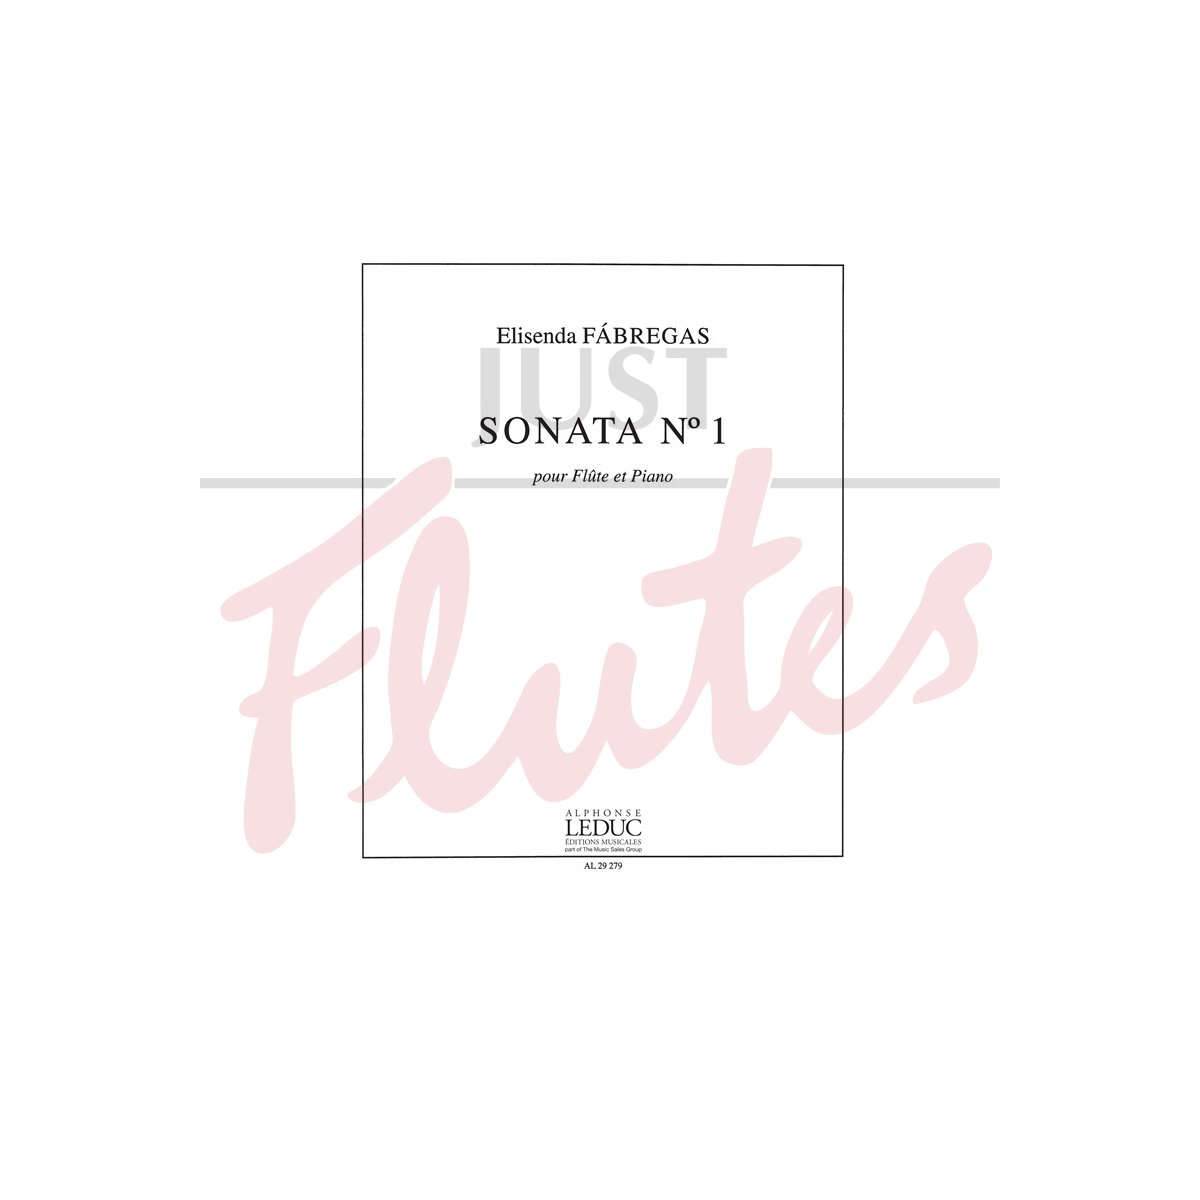 Sonata No 1 for Flute and Piano